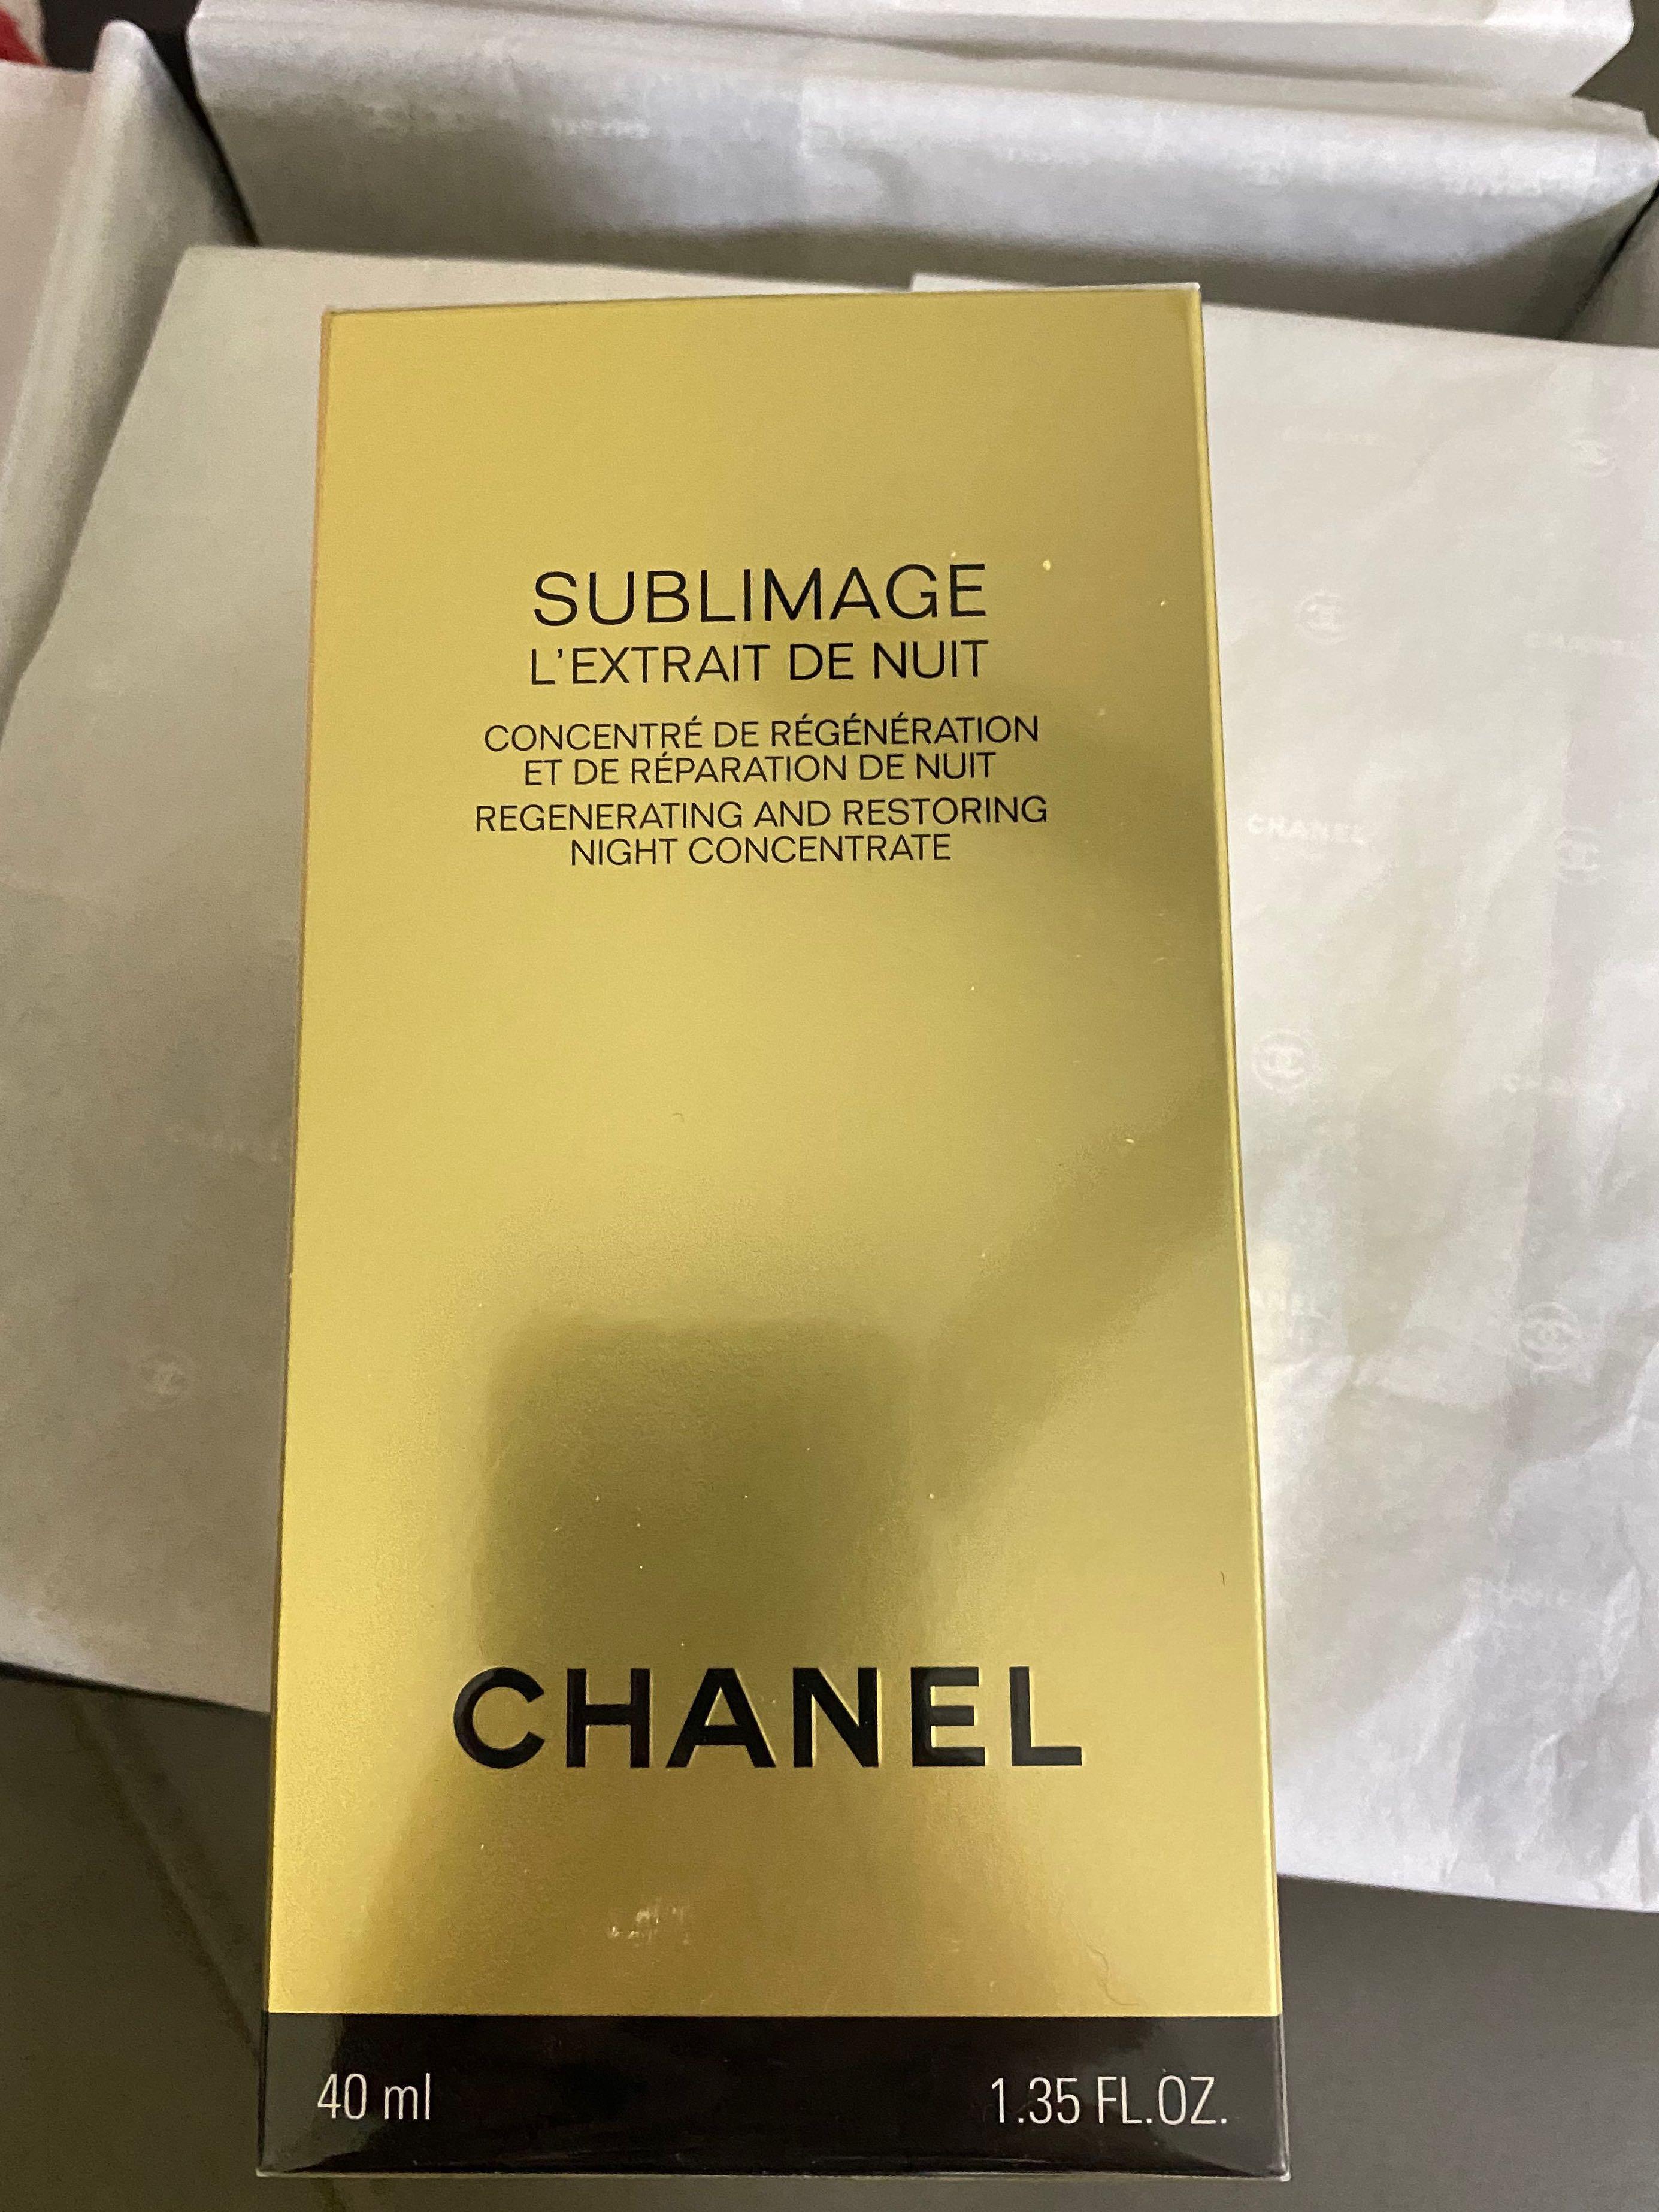 Chanel Sublimage L'Essence Fondamentale 40ml